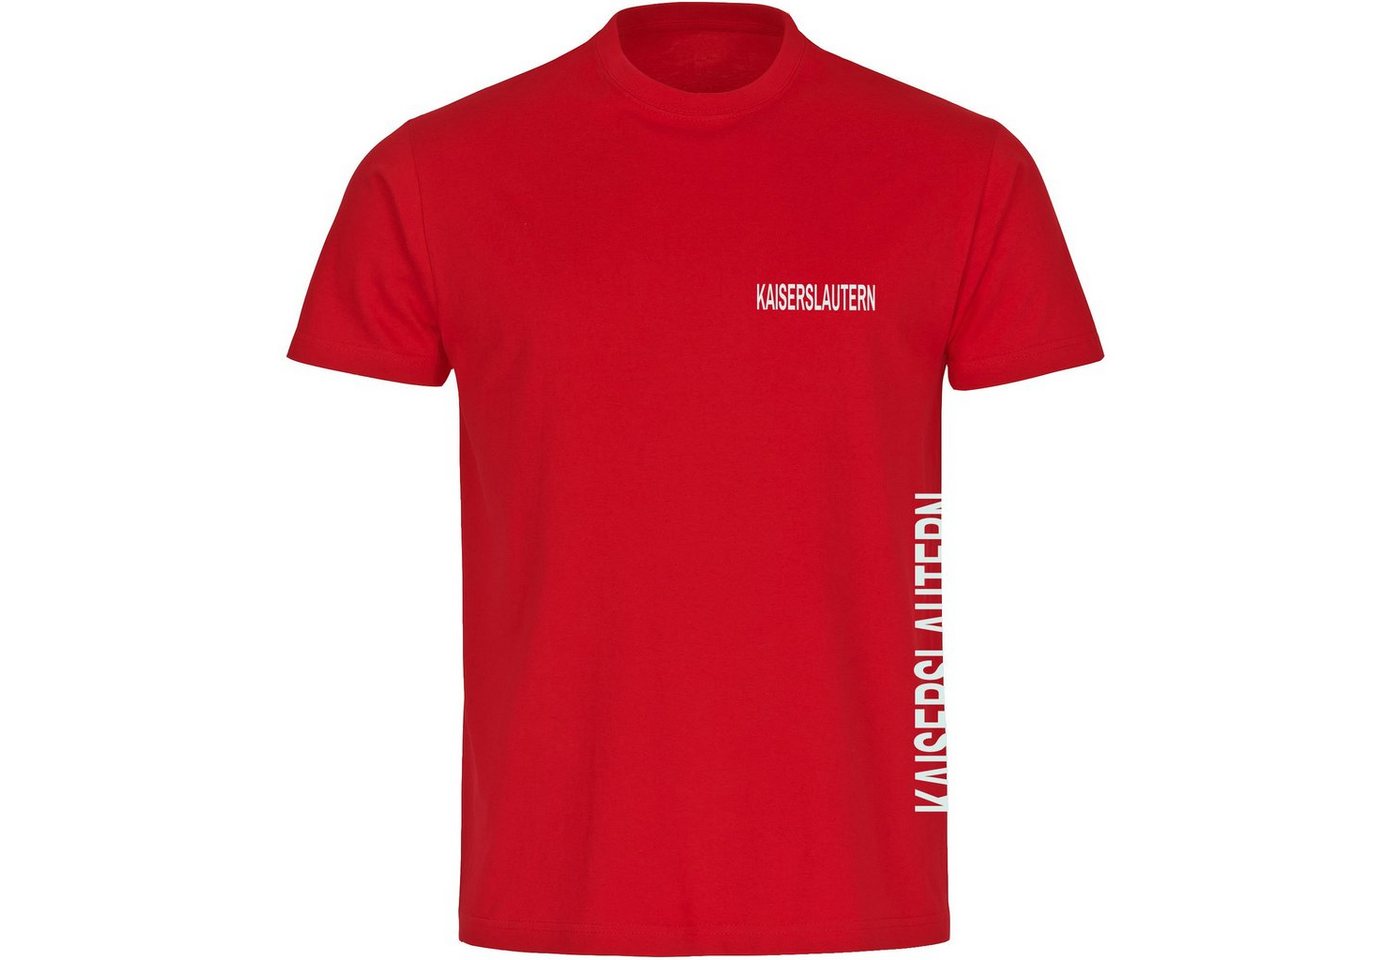 multifanshop T-Shirt Herren Kaiserslautern - Brust & Seite - Männer von multifanshop